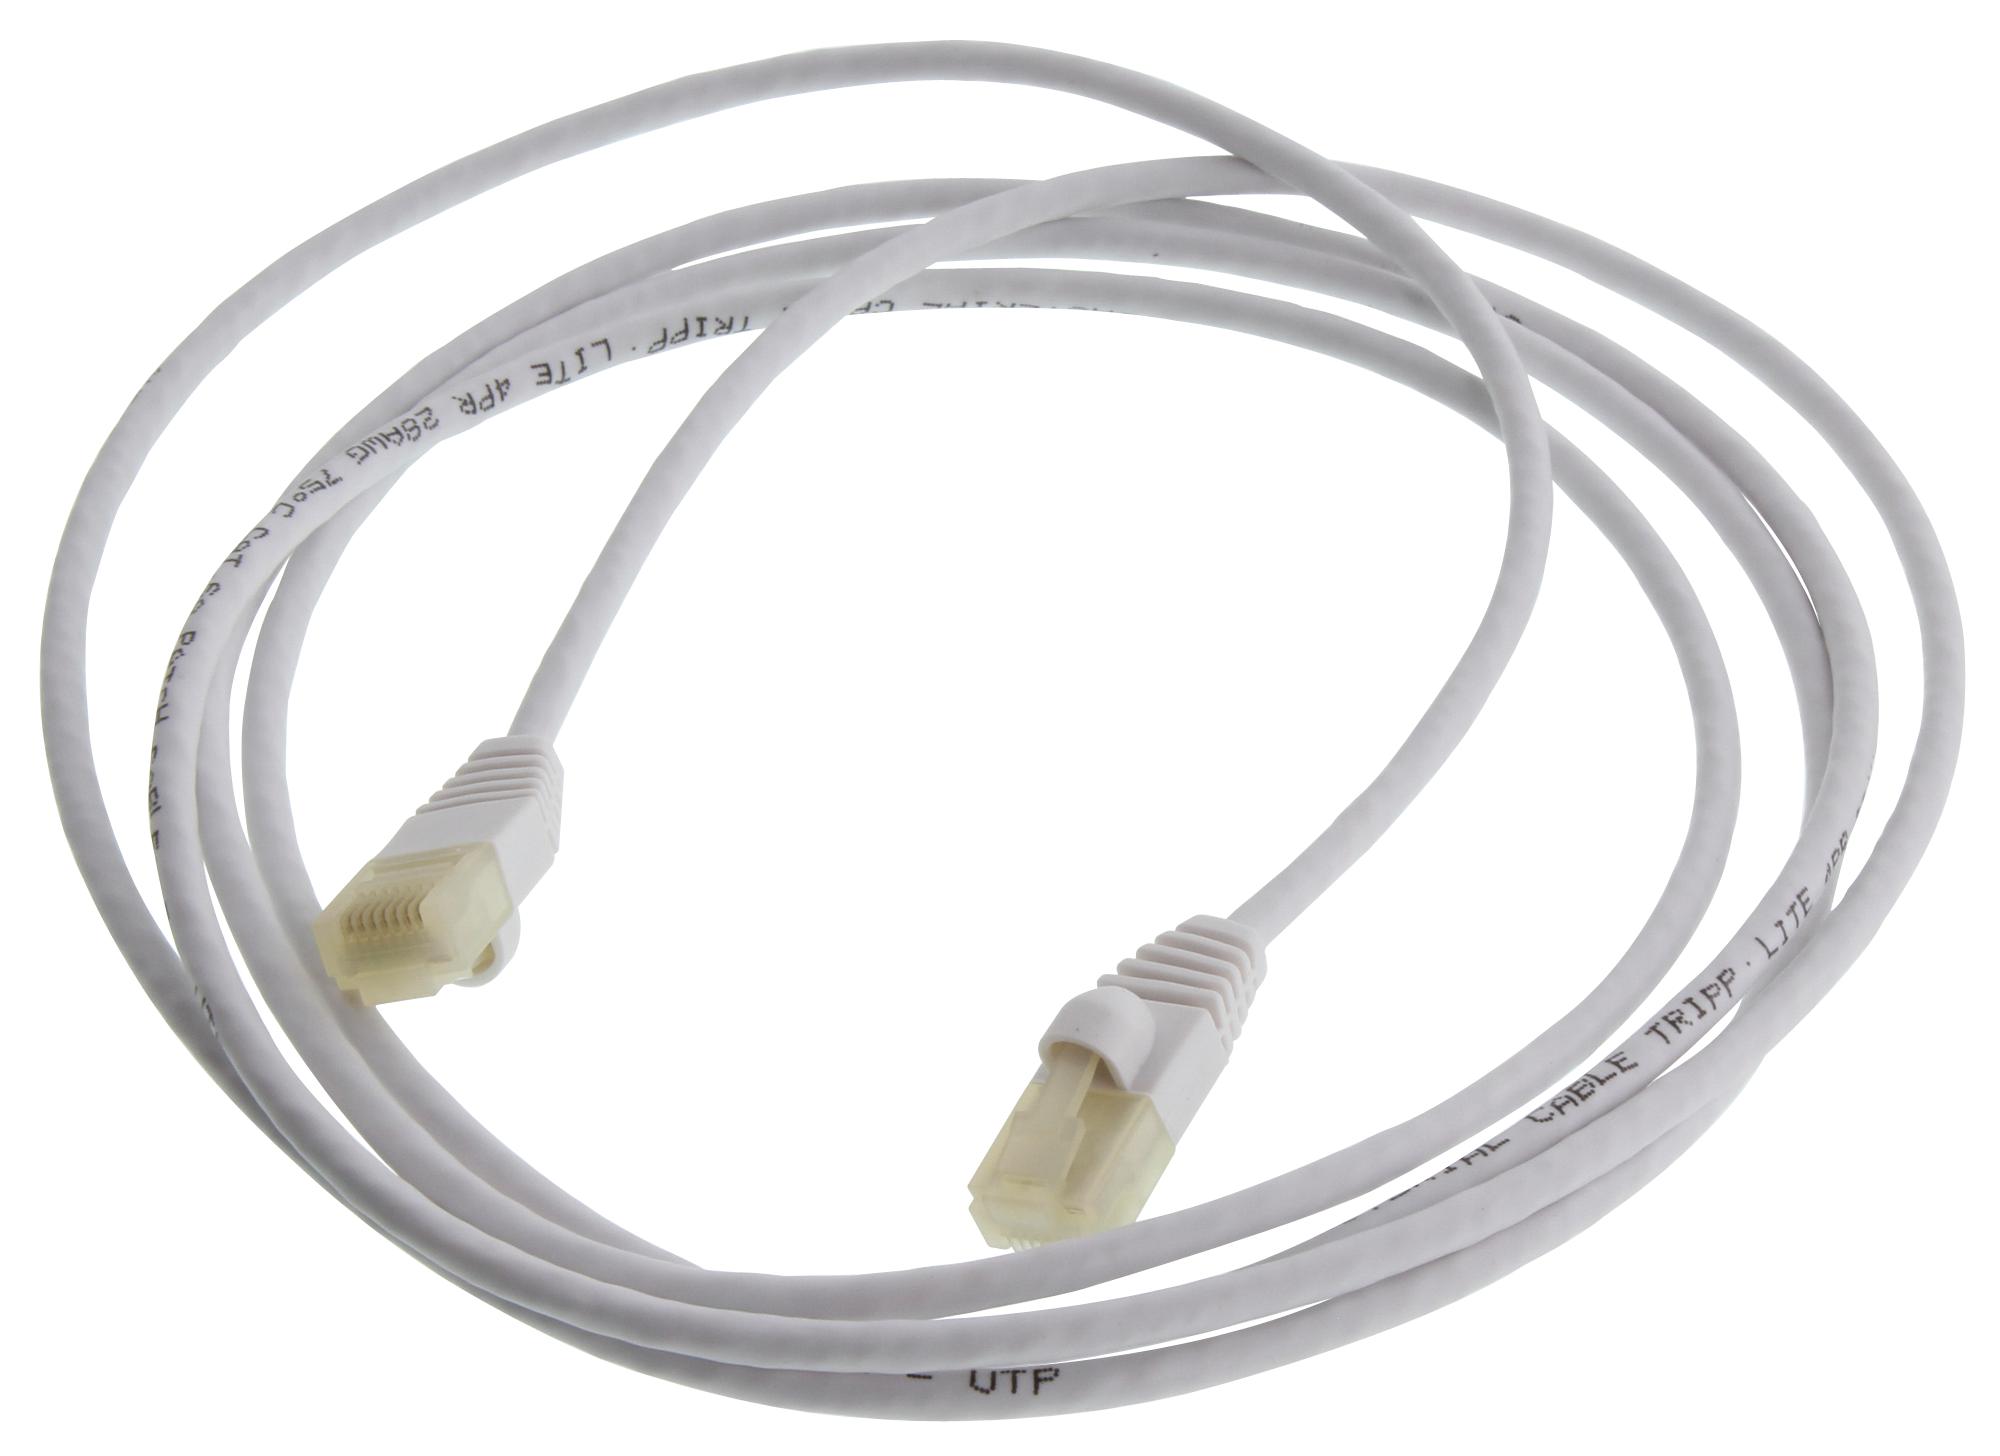 Eaton Tripp Lite N261Ab-S07-Wh Enet Cable, Rj45 Plug-Plug, 7Ft, White